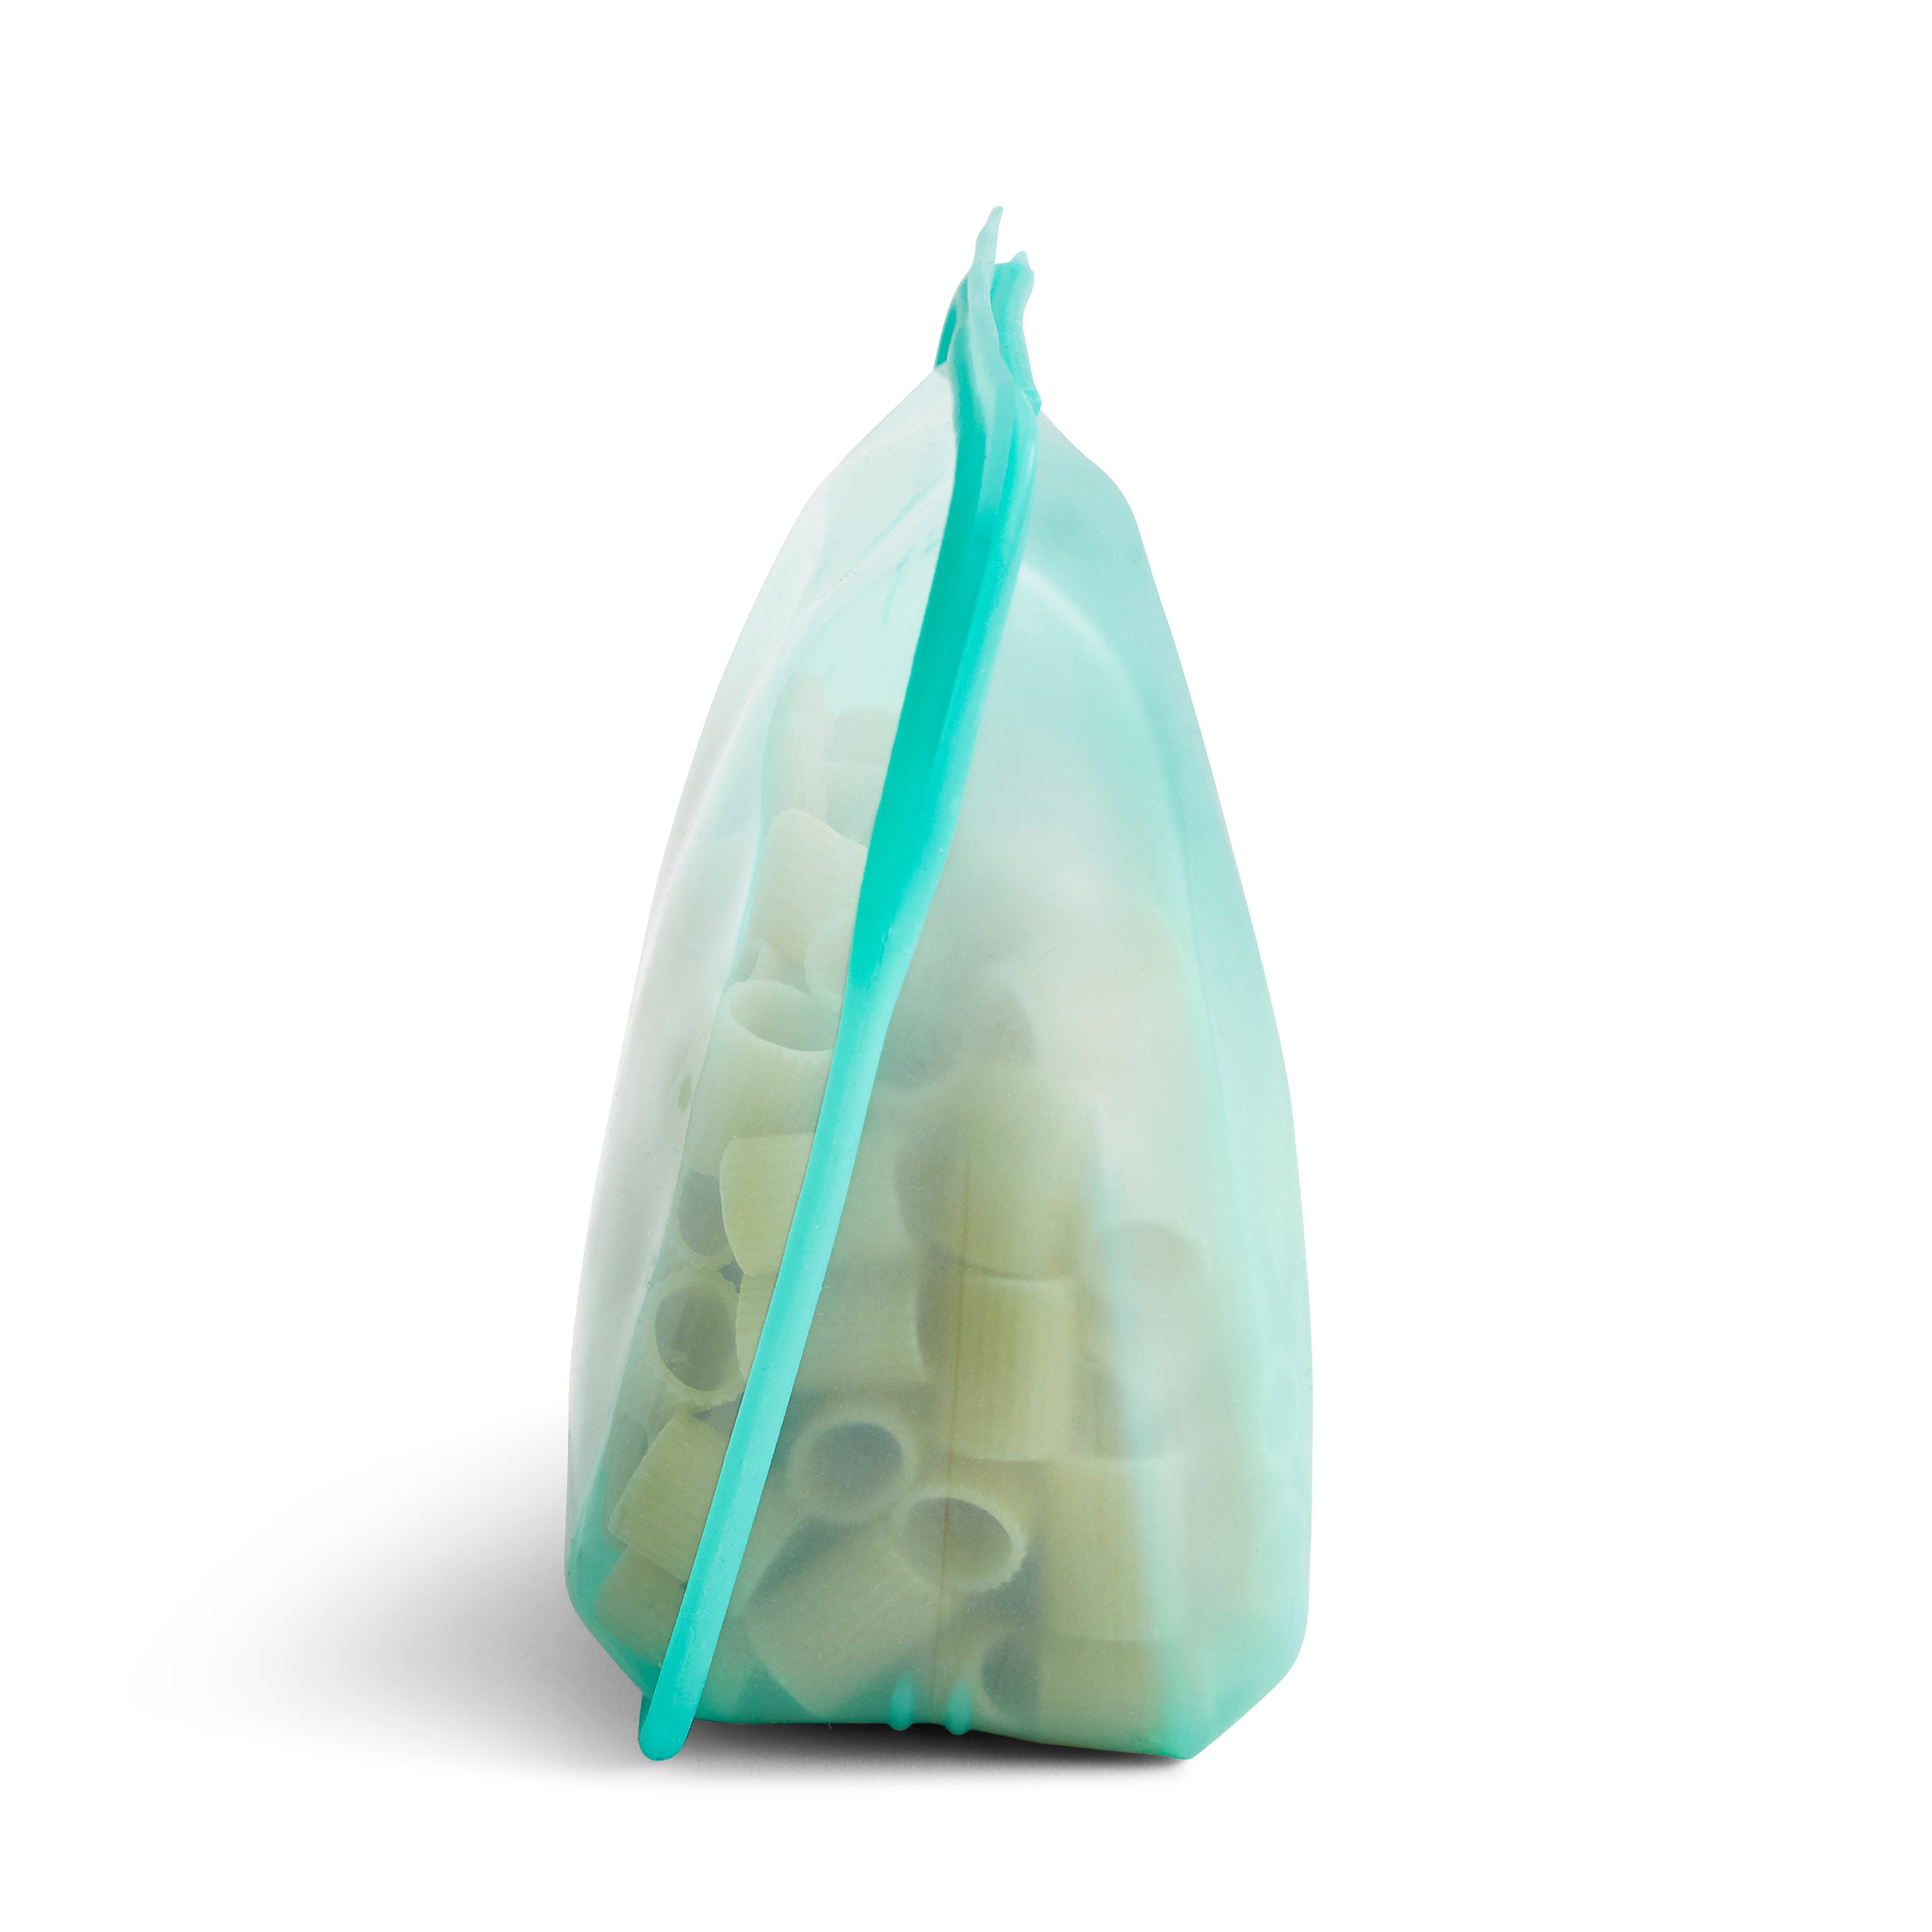 Stasher Reusable Silicone Food Bag, Aqua, Large Stand Up Bag (1.6 litres)